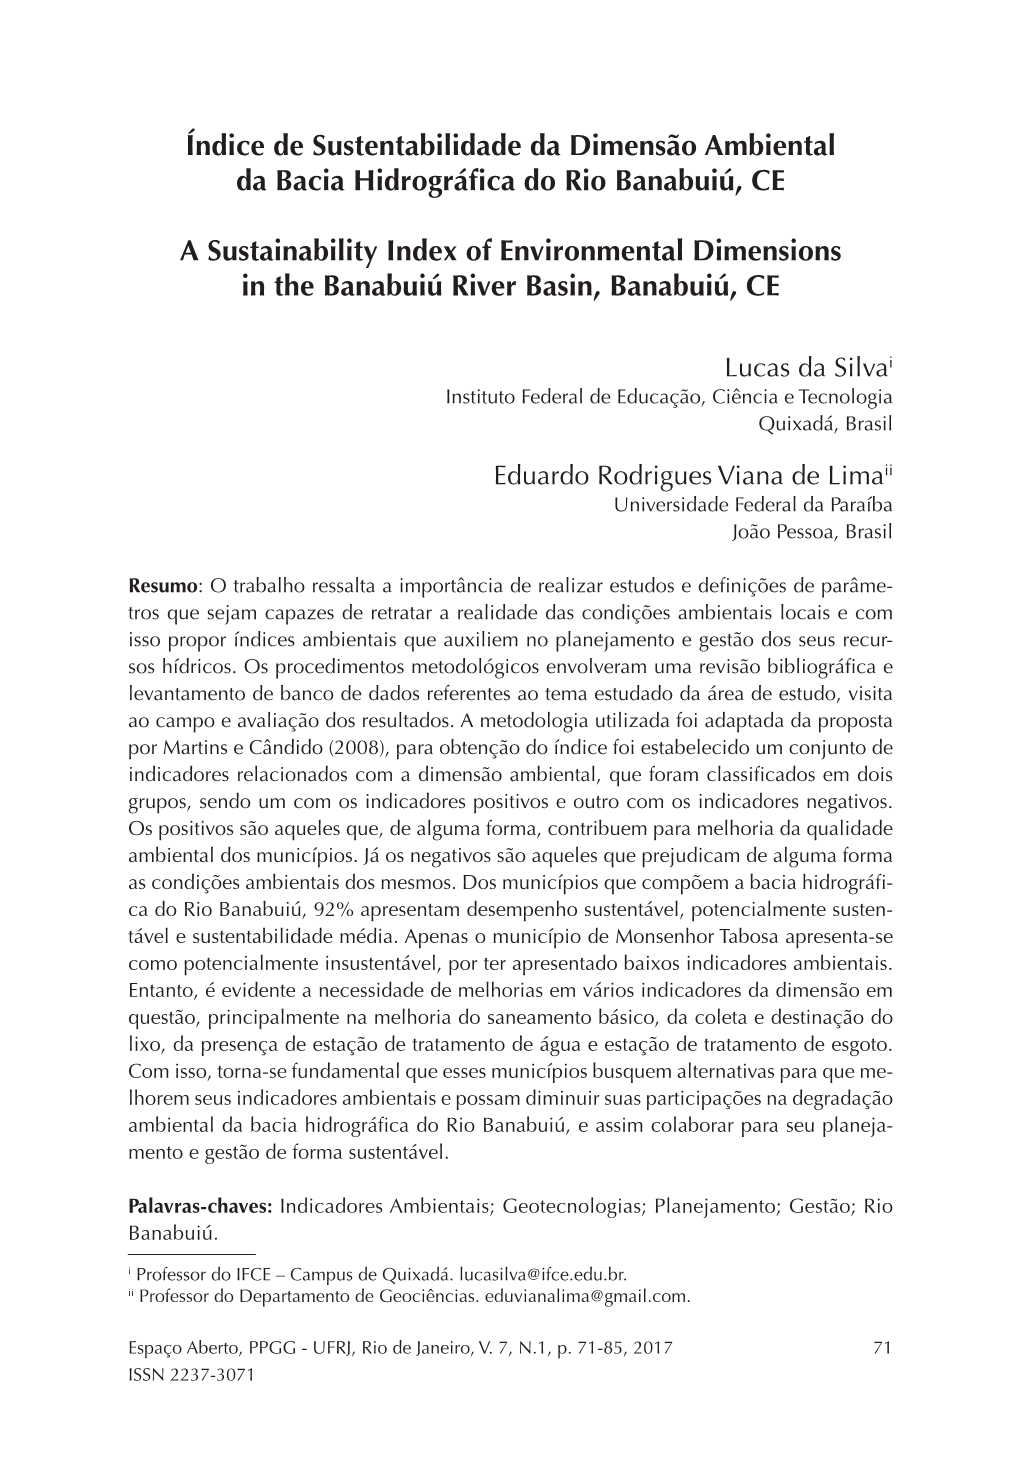 Índice De Sustentabilidade Da Dimensão Ambiental Da Bacia Hidrográfica Do Rio Banabuiú, CE